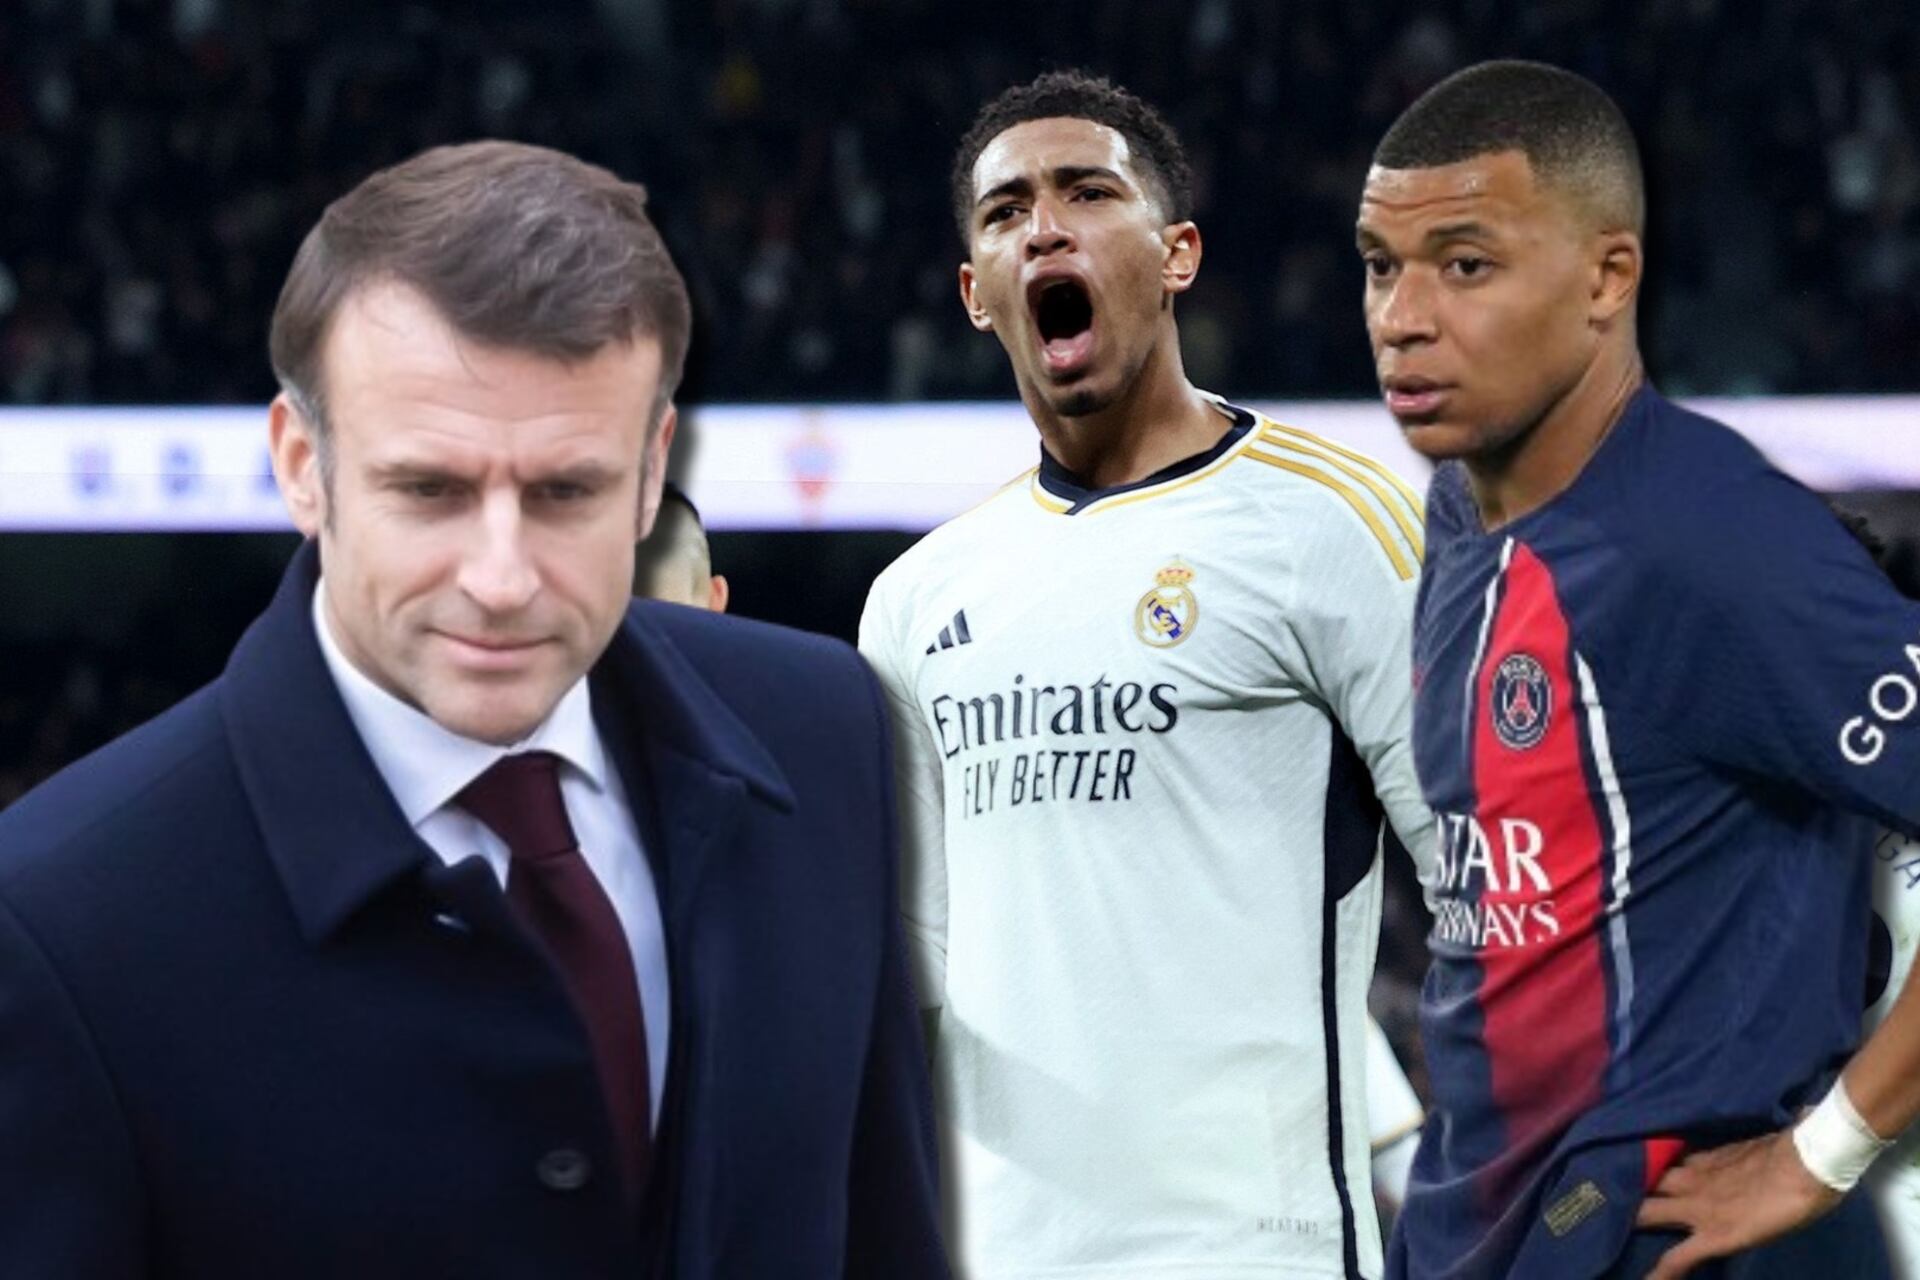 El presidente de Francia le quiere amargar al Madrid, este pedido hará a Mbappé